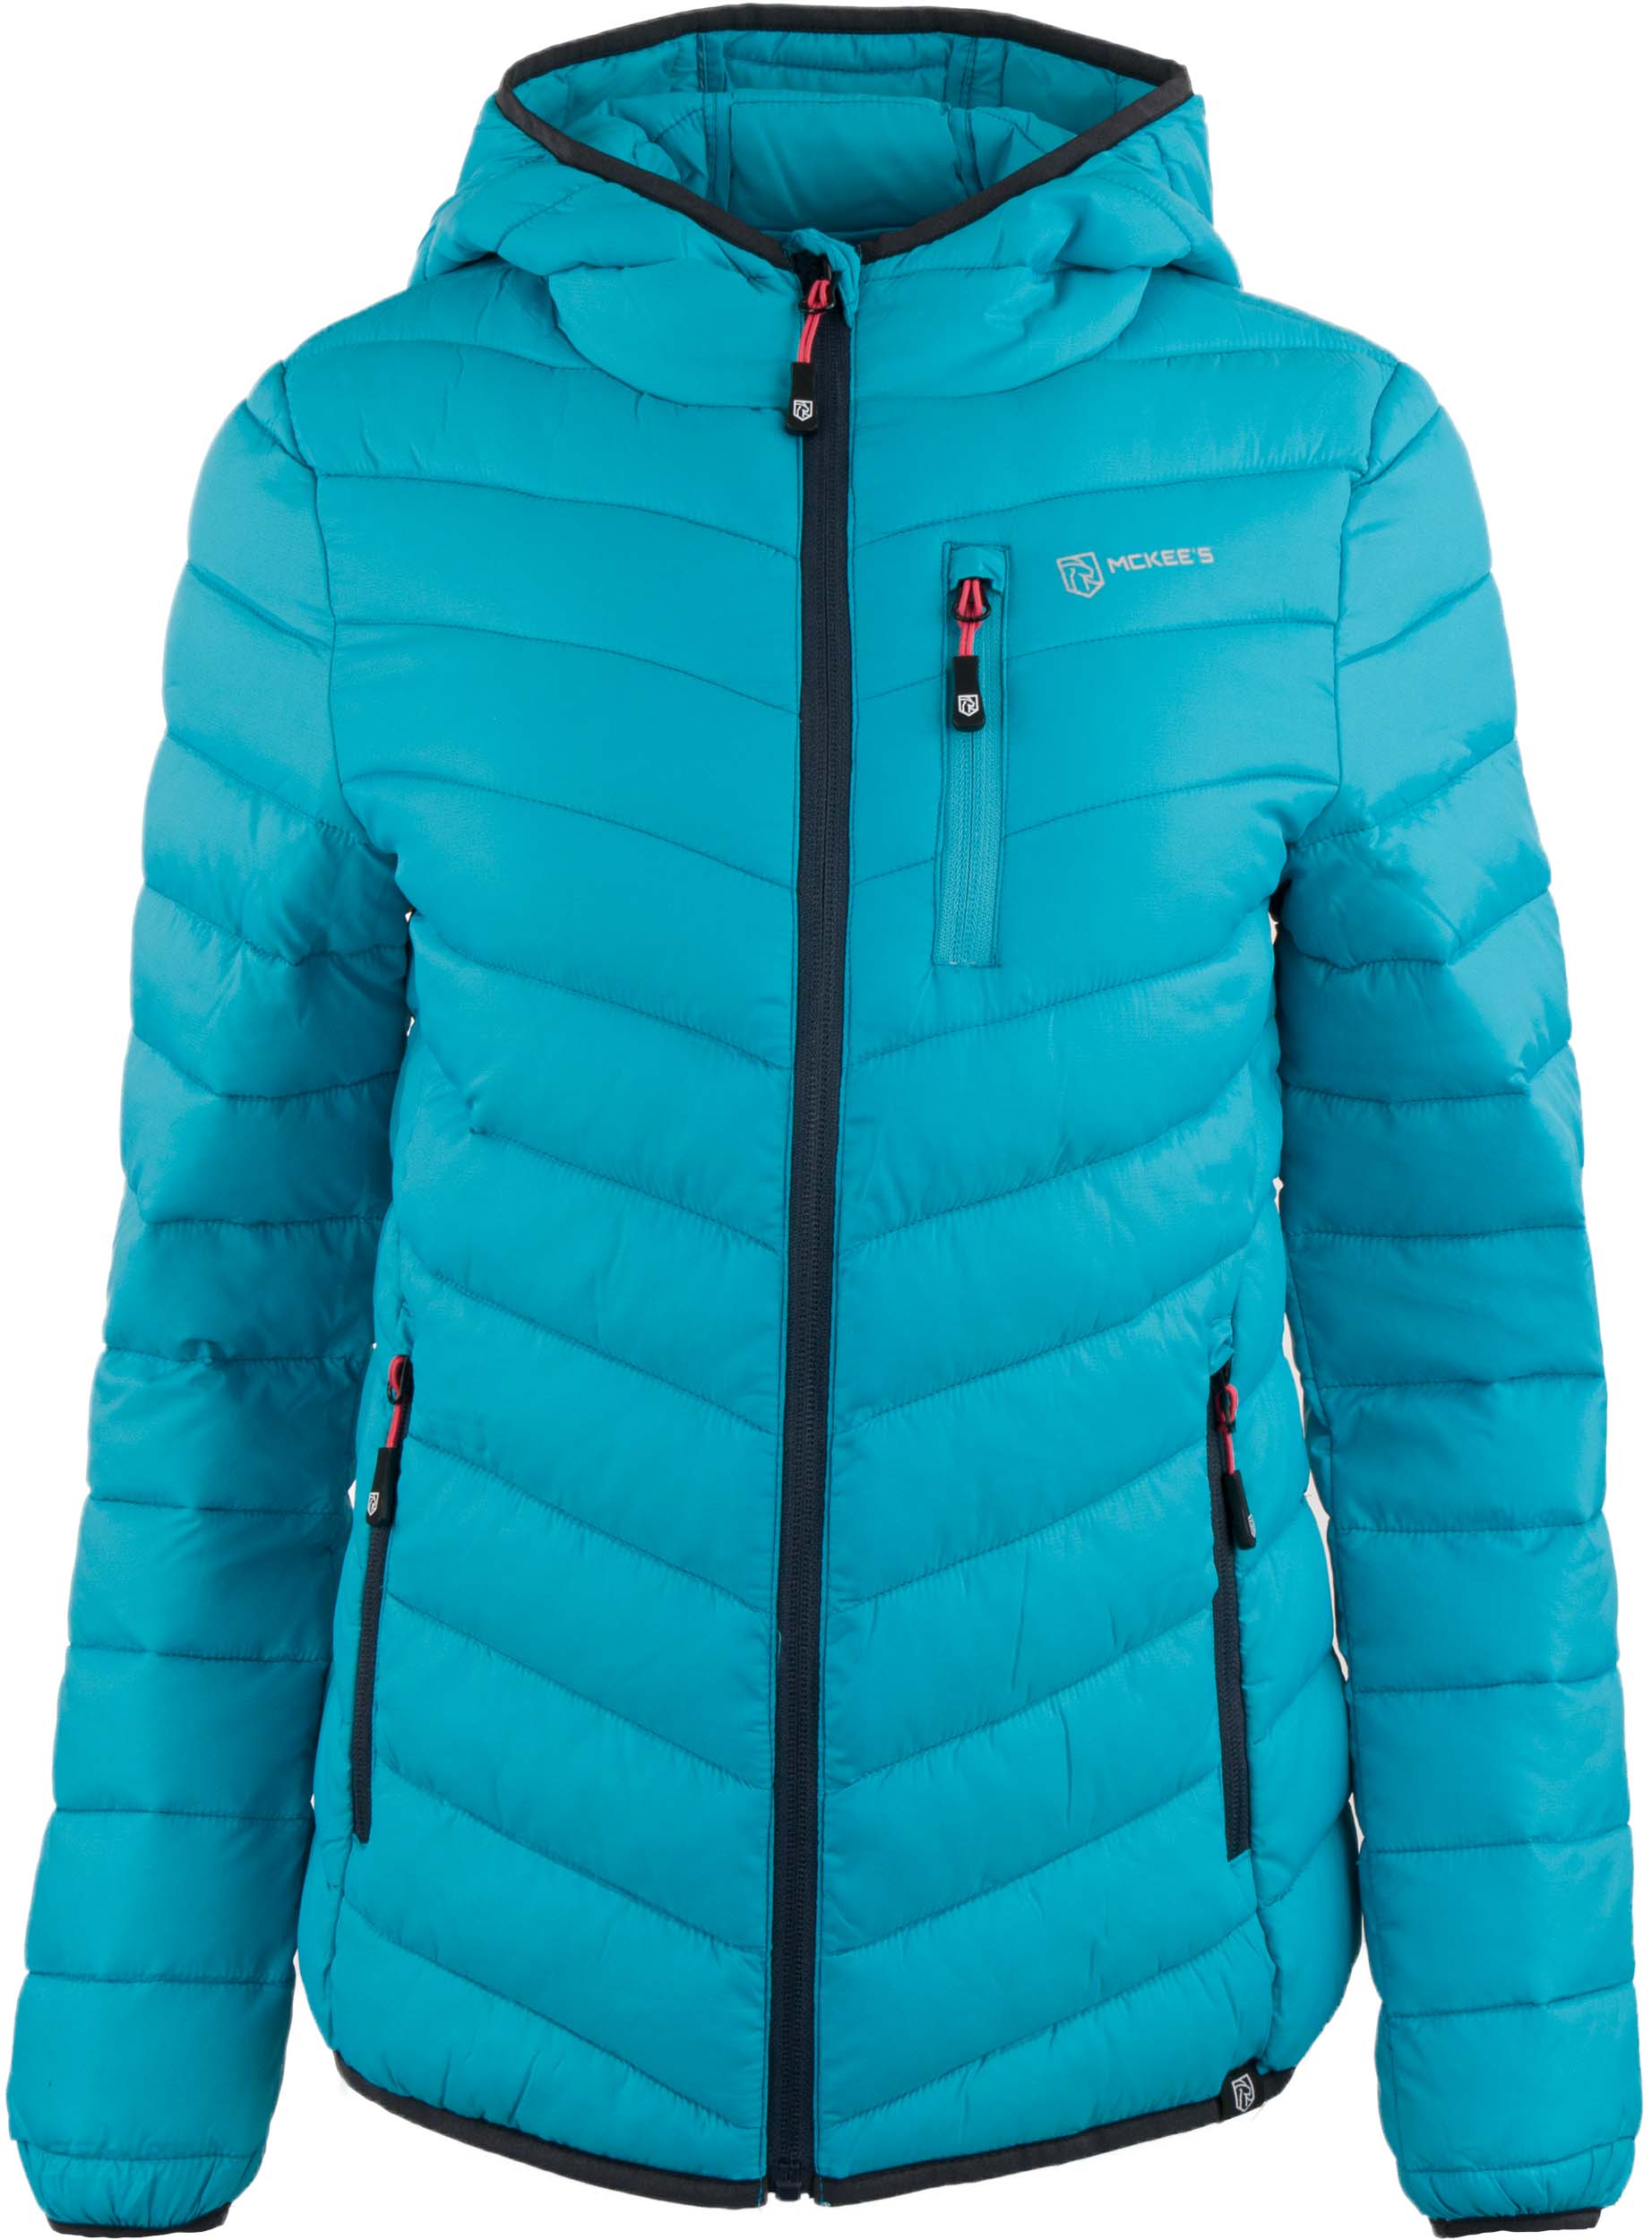 Dámská zimní bunda Mckees Terminillo turquoise|46-L